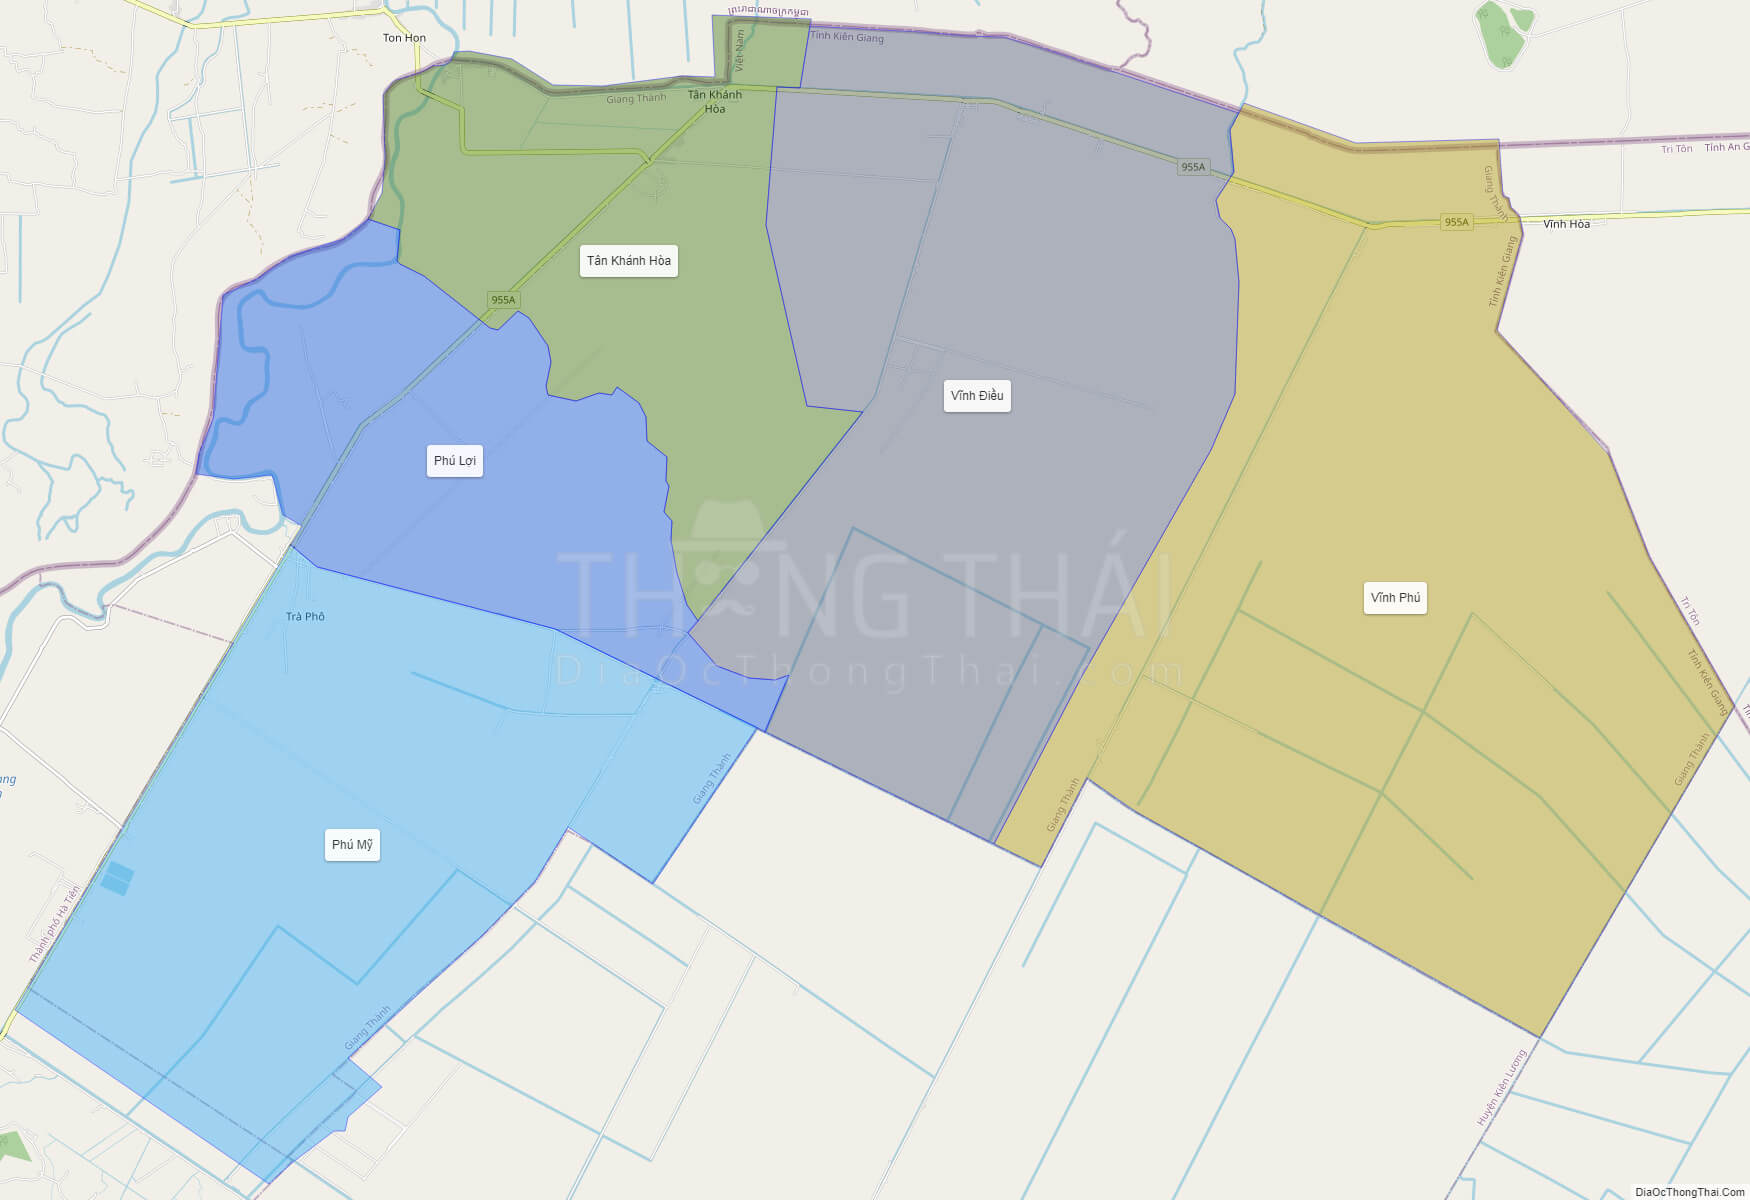 Bản đồ huyện Giang Thành tỉnh Kiên Giang có thể xem ở đâu trên Google Maps?